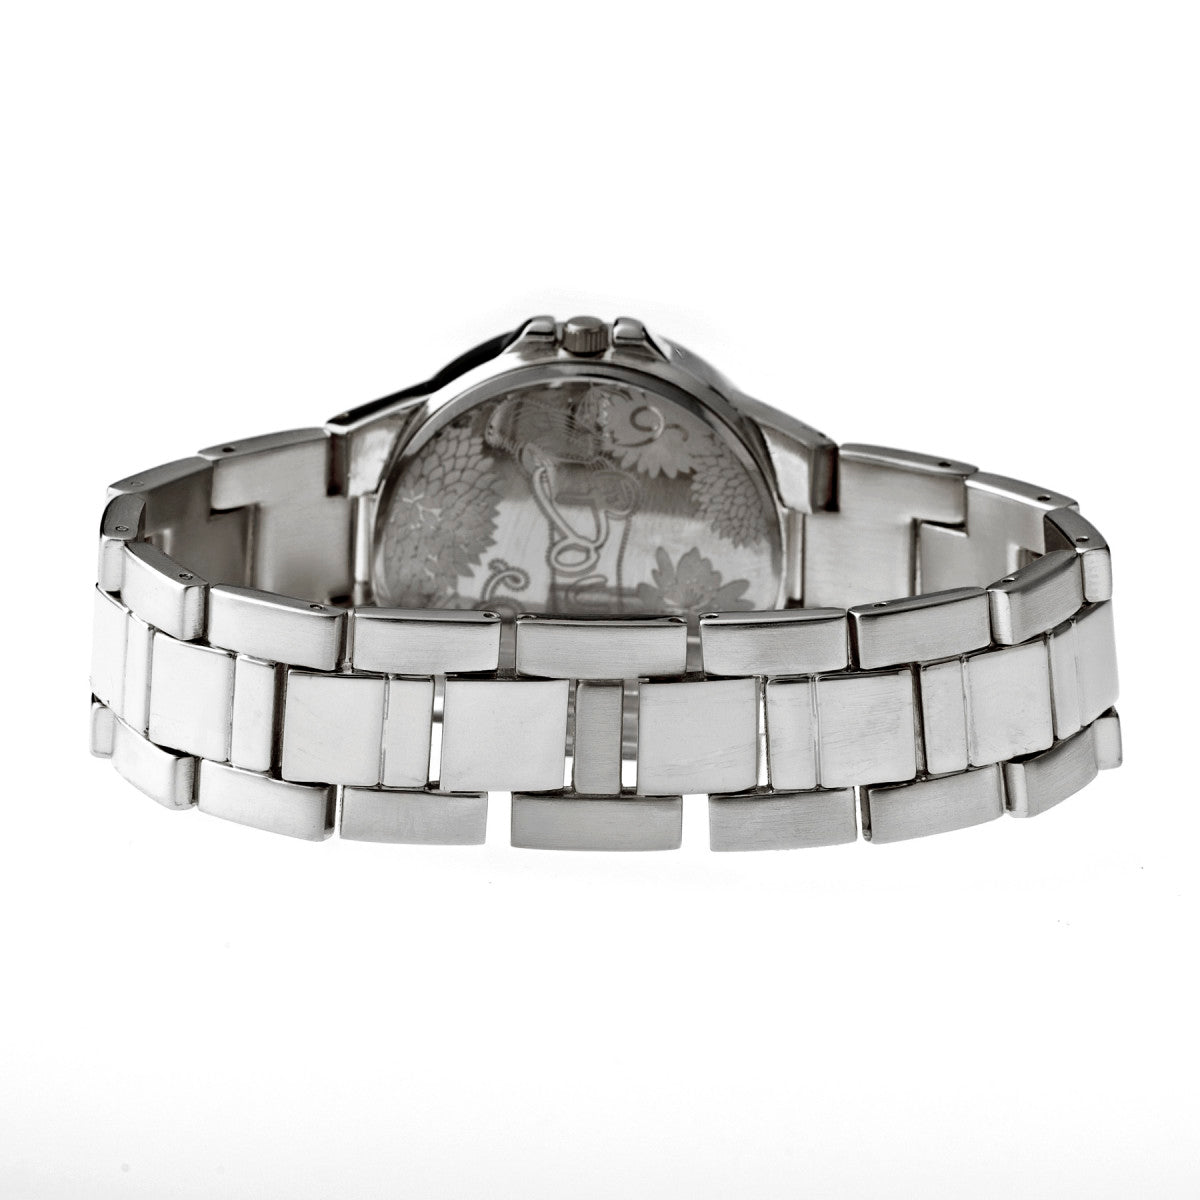 Boum Cachet Crystal-Dial Ladies Bracelet Watch - Silver/Black - BOUBM2302